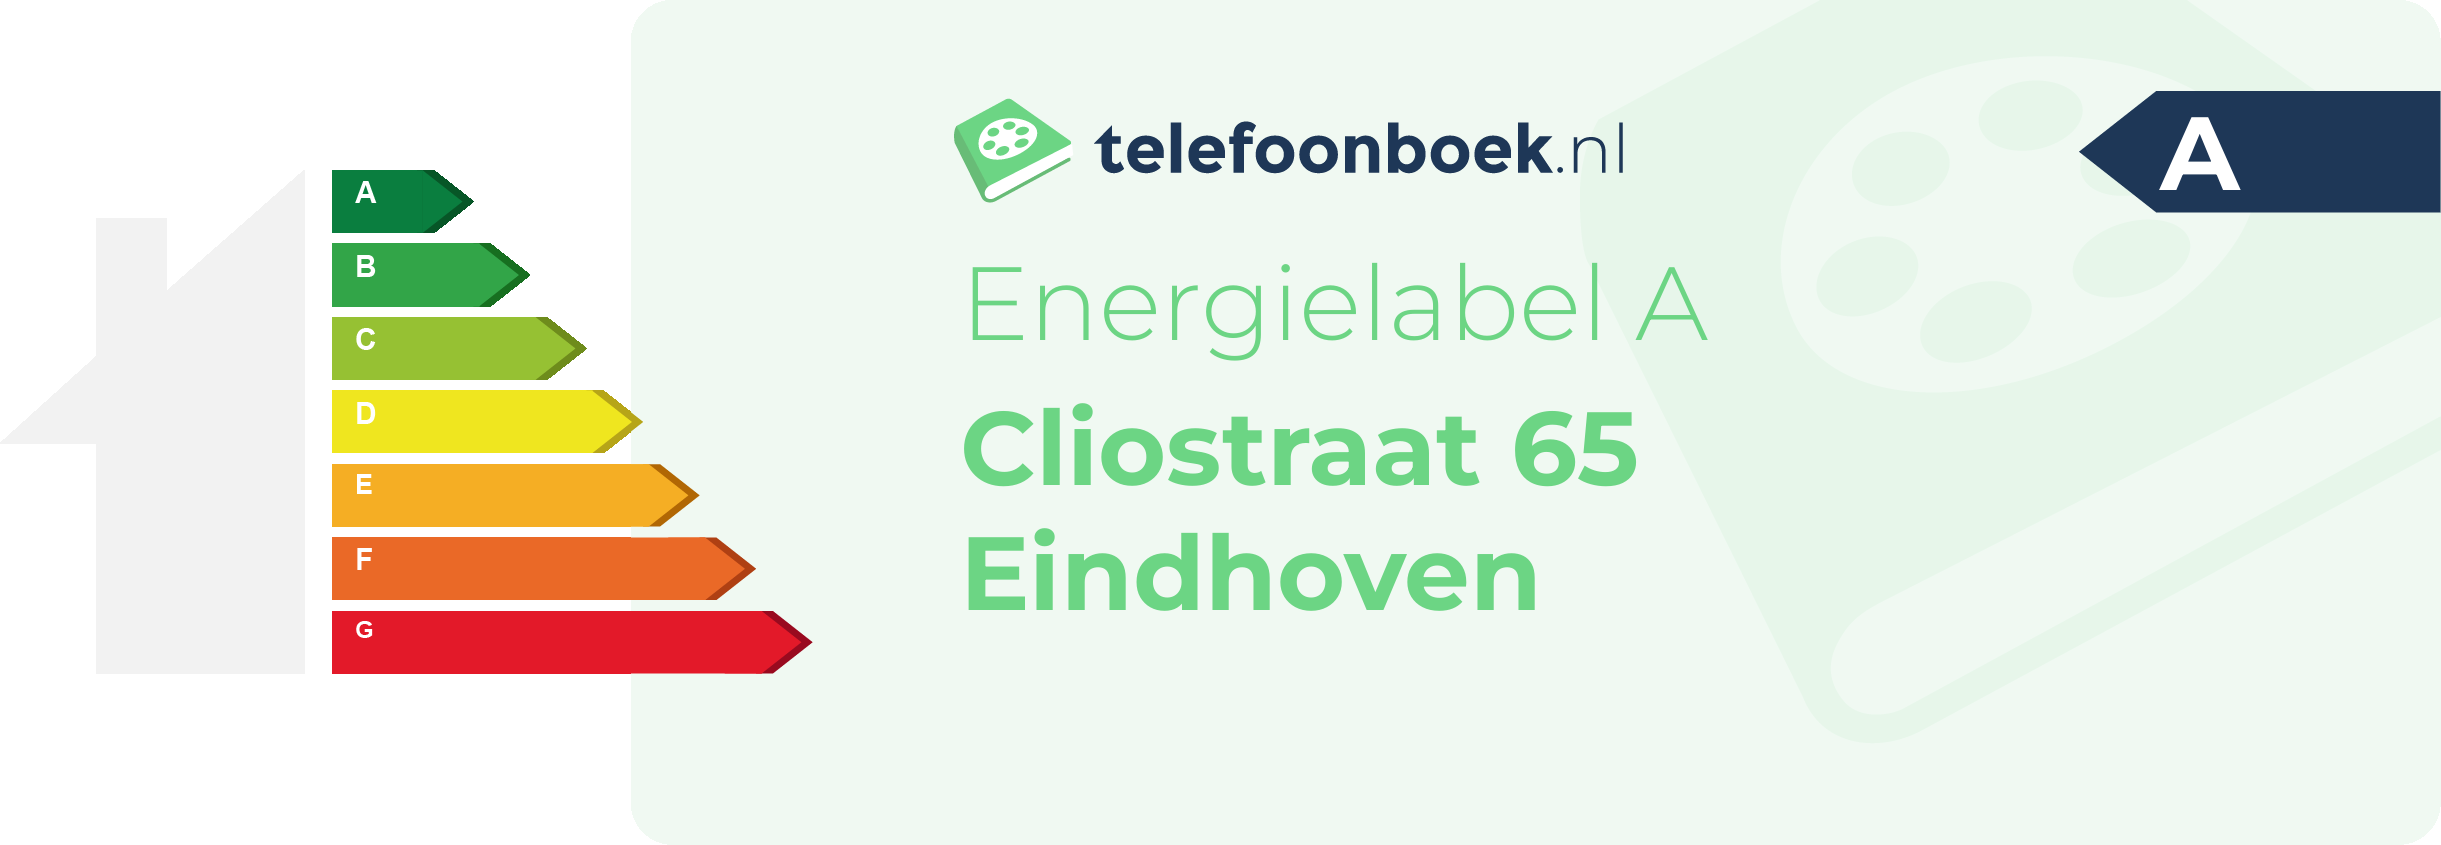 Energielabel Cliostraat 65 Eindhoven